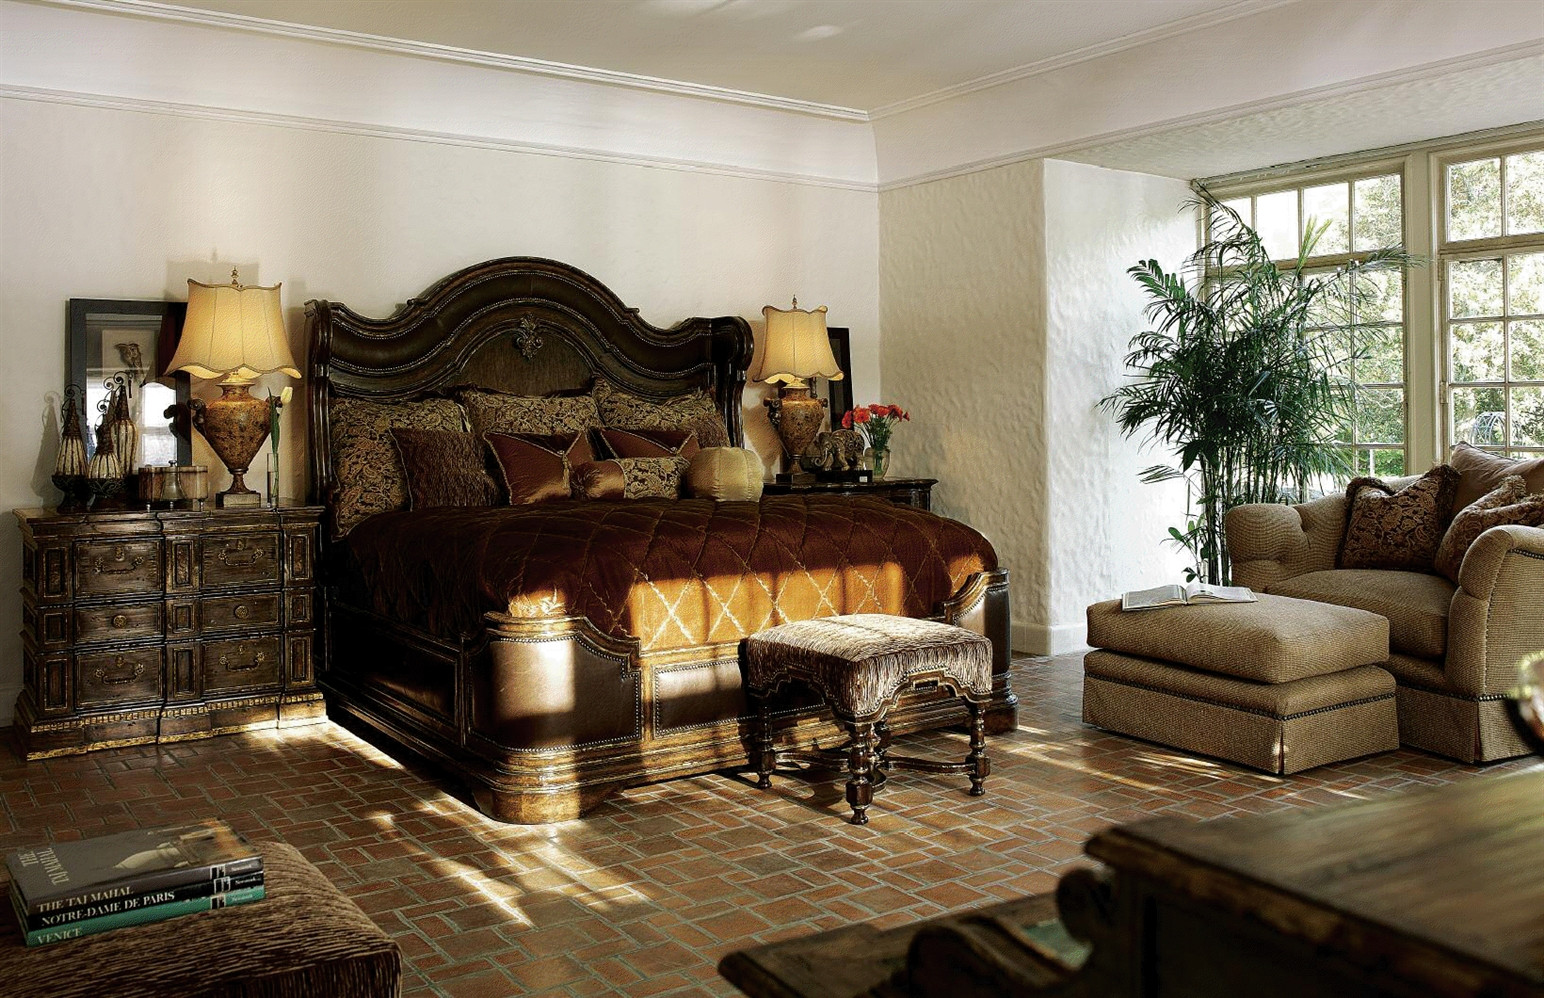 King Size Master Bedroom Sets
 Bedroom Give Your Bedroom Cozy Nuance With Master Bedroom